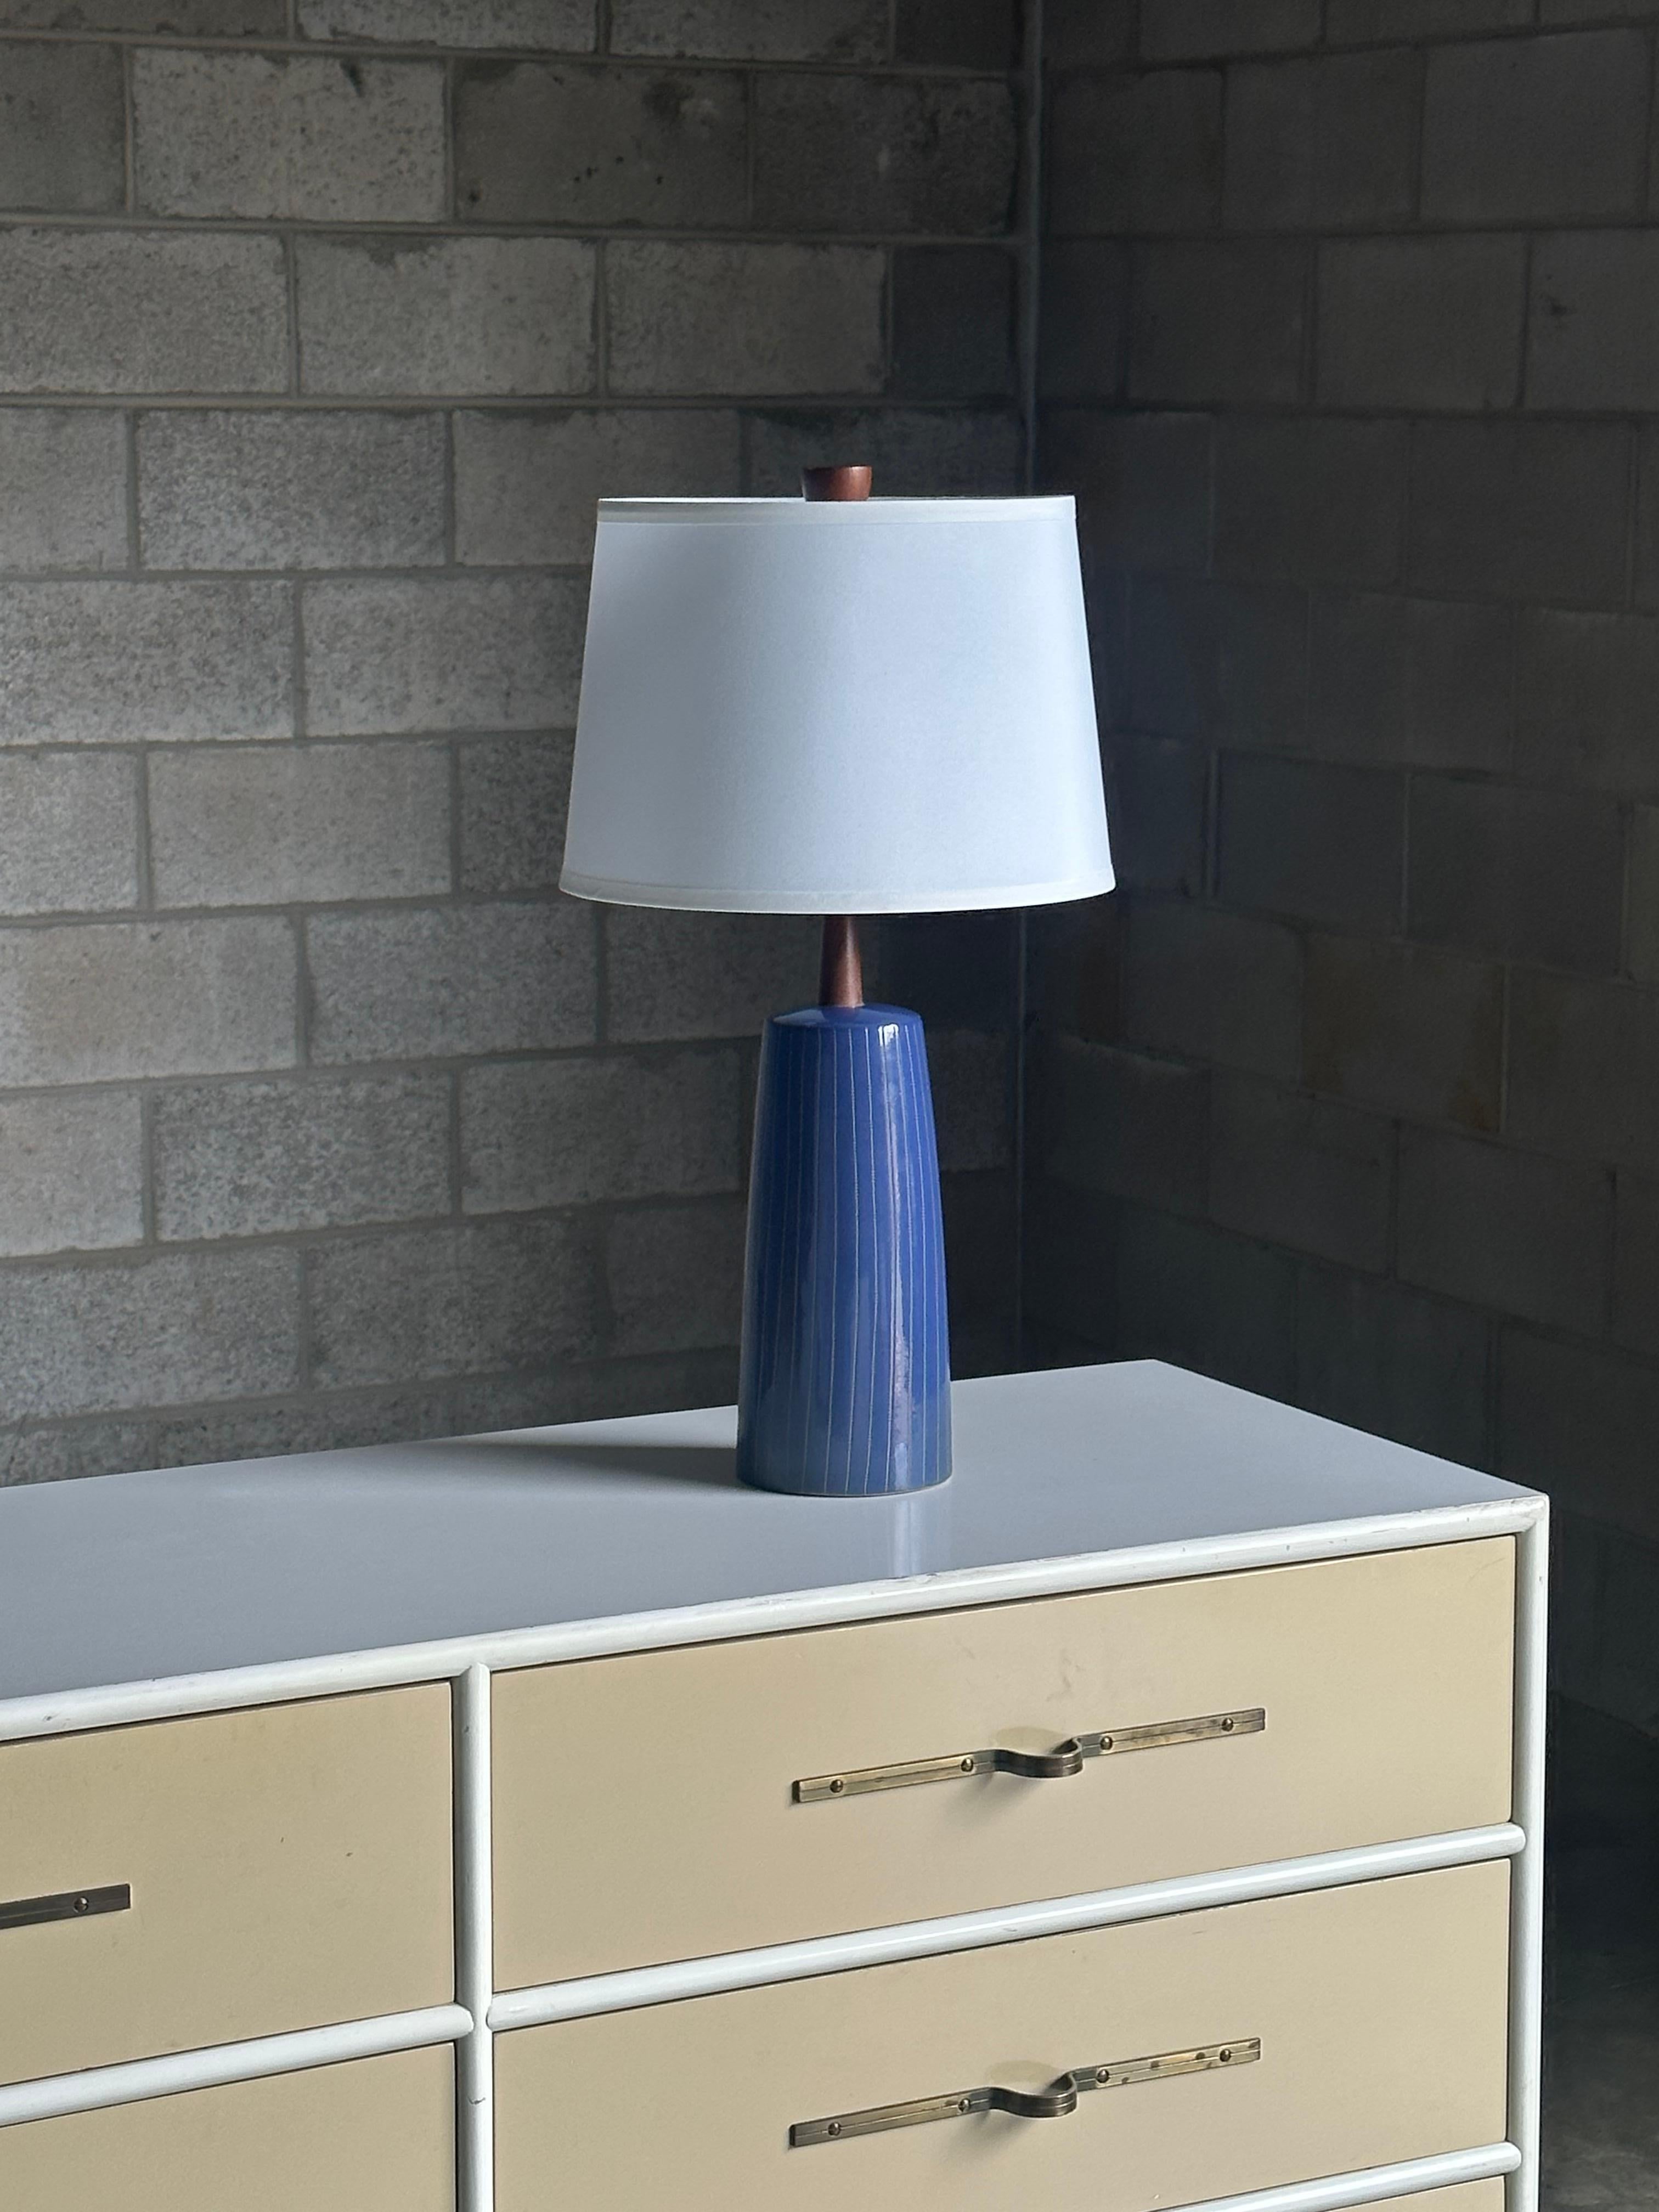 Une magnifique lampe de table conçue par le célèbre duo de céramistes Jane et Gordon Martz pour Marshall Studios. L'émail est bleu royal avec des rayures verticales incisées. L'épi de faîtage en noyer complète la lampe.

Dimensions générales :
24